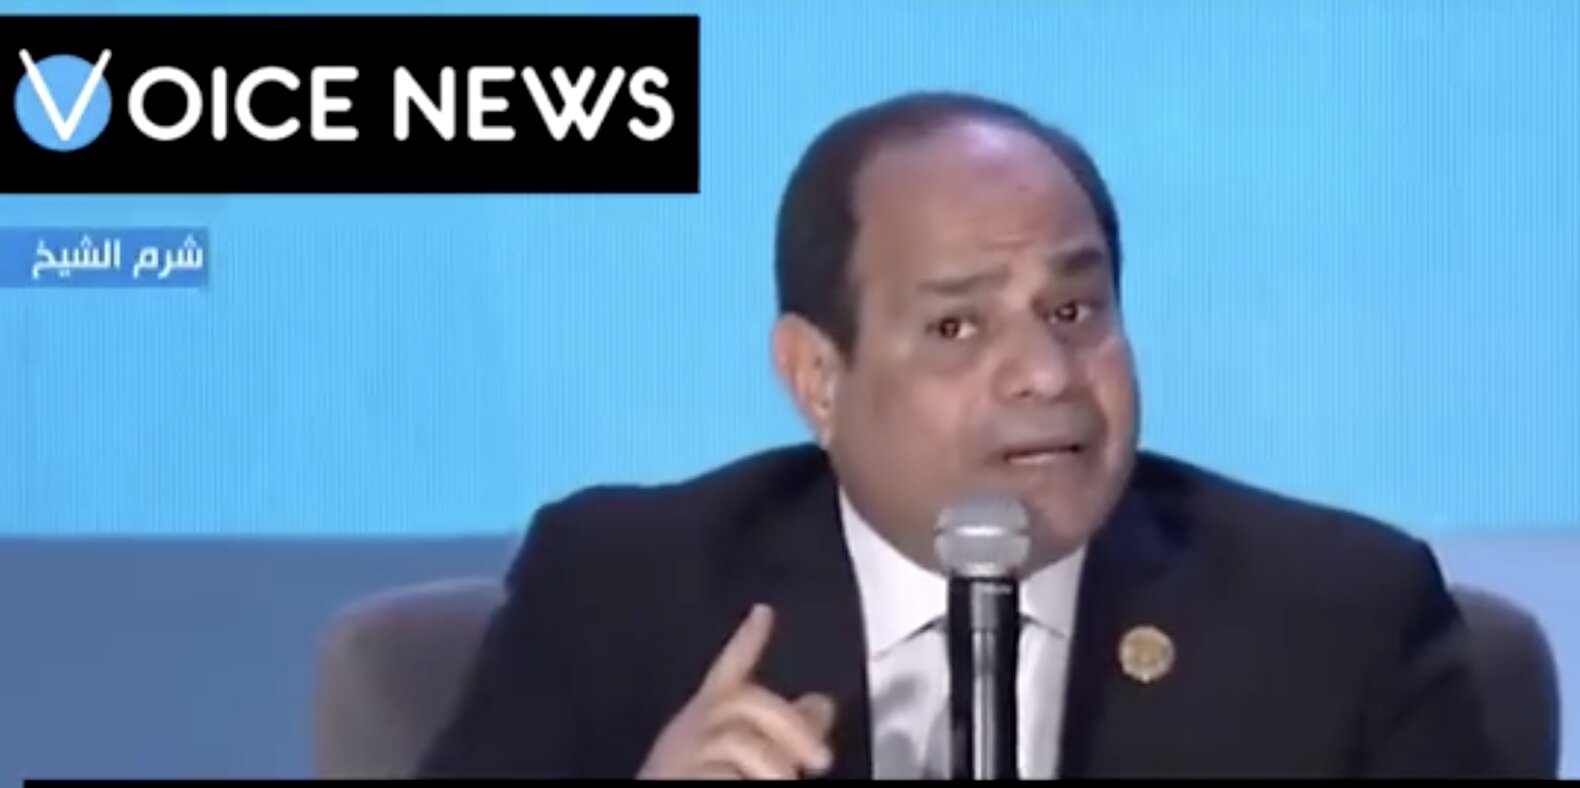 “ΒΟΜΒΑ” του Προέδρου της Αιγύπτου: “ΔΕΝ ΕΙΝΑΙ ΑΝΘΡΩΠΙΝΟ ΔΙΚΑΙΩΜΑ να θέλουν οι μετανάστες να κάνουν τις χώρες της Δύσης όπως τις δικές τους!